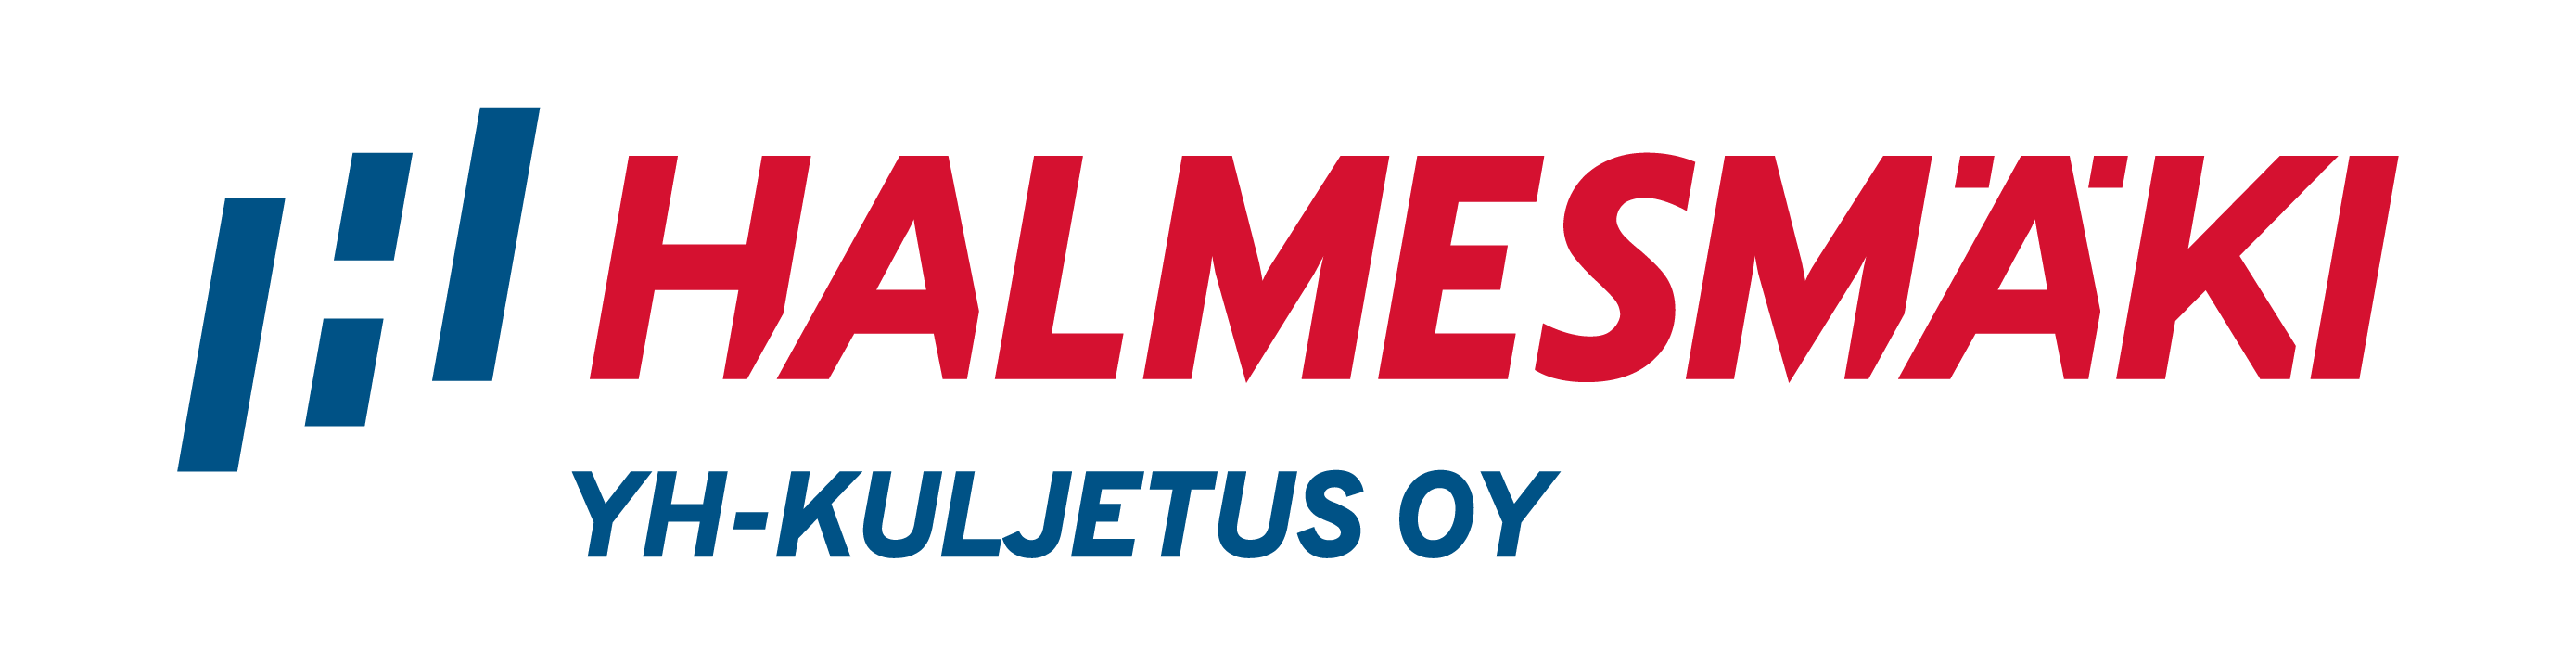 YH-kuljetus-logo